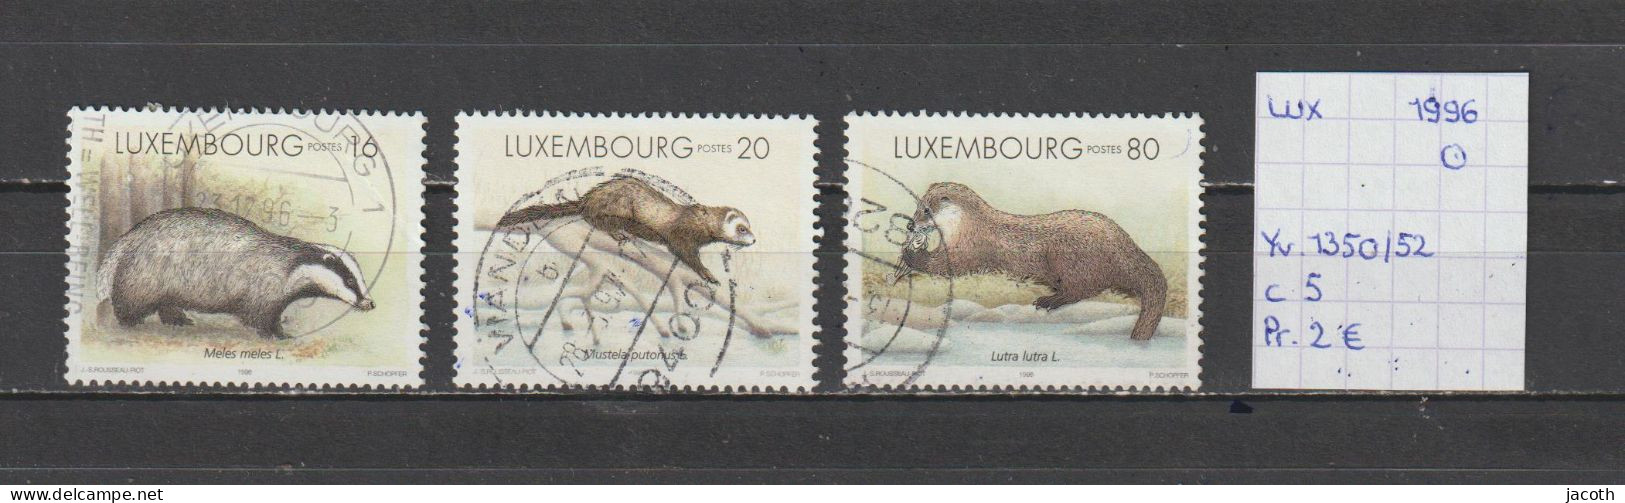 (TJ) Luxembourg 1996 - YT 1350/52 (gest./obl./used) - Gebruikt